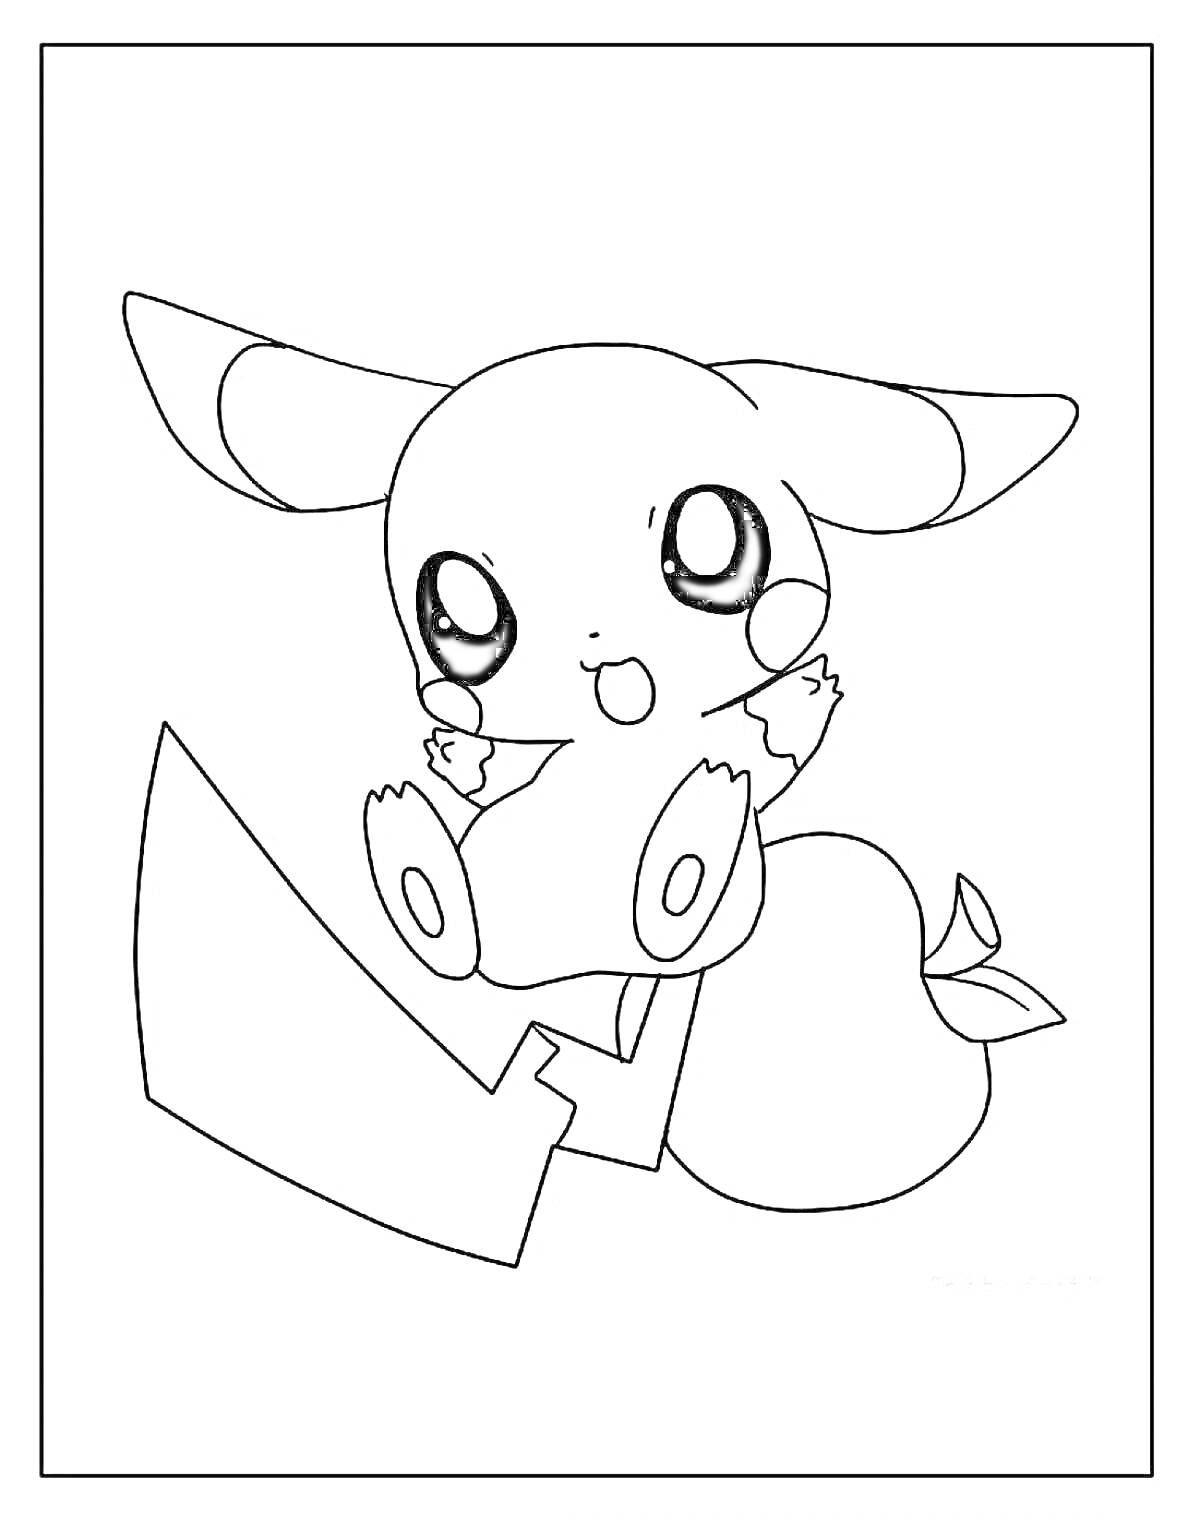 Раскраска Милый аниме-существо с большими ушами, круглыми глазами и крупным хвостом со стрелой